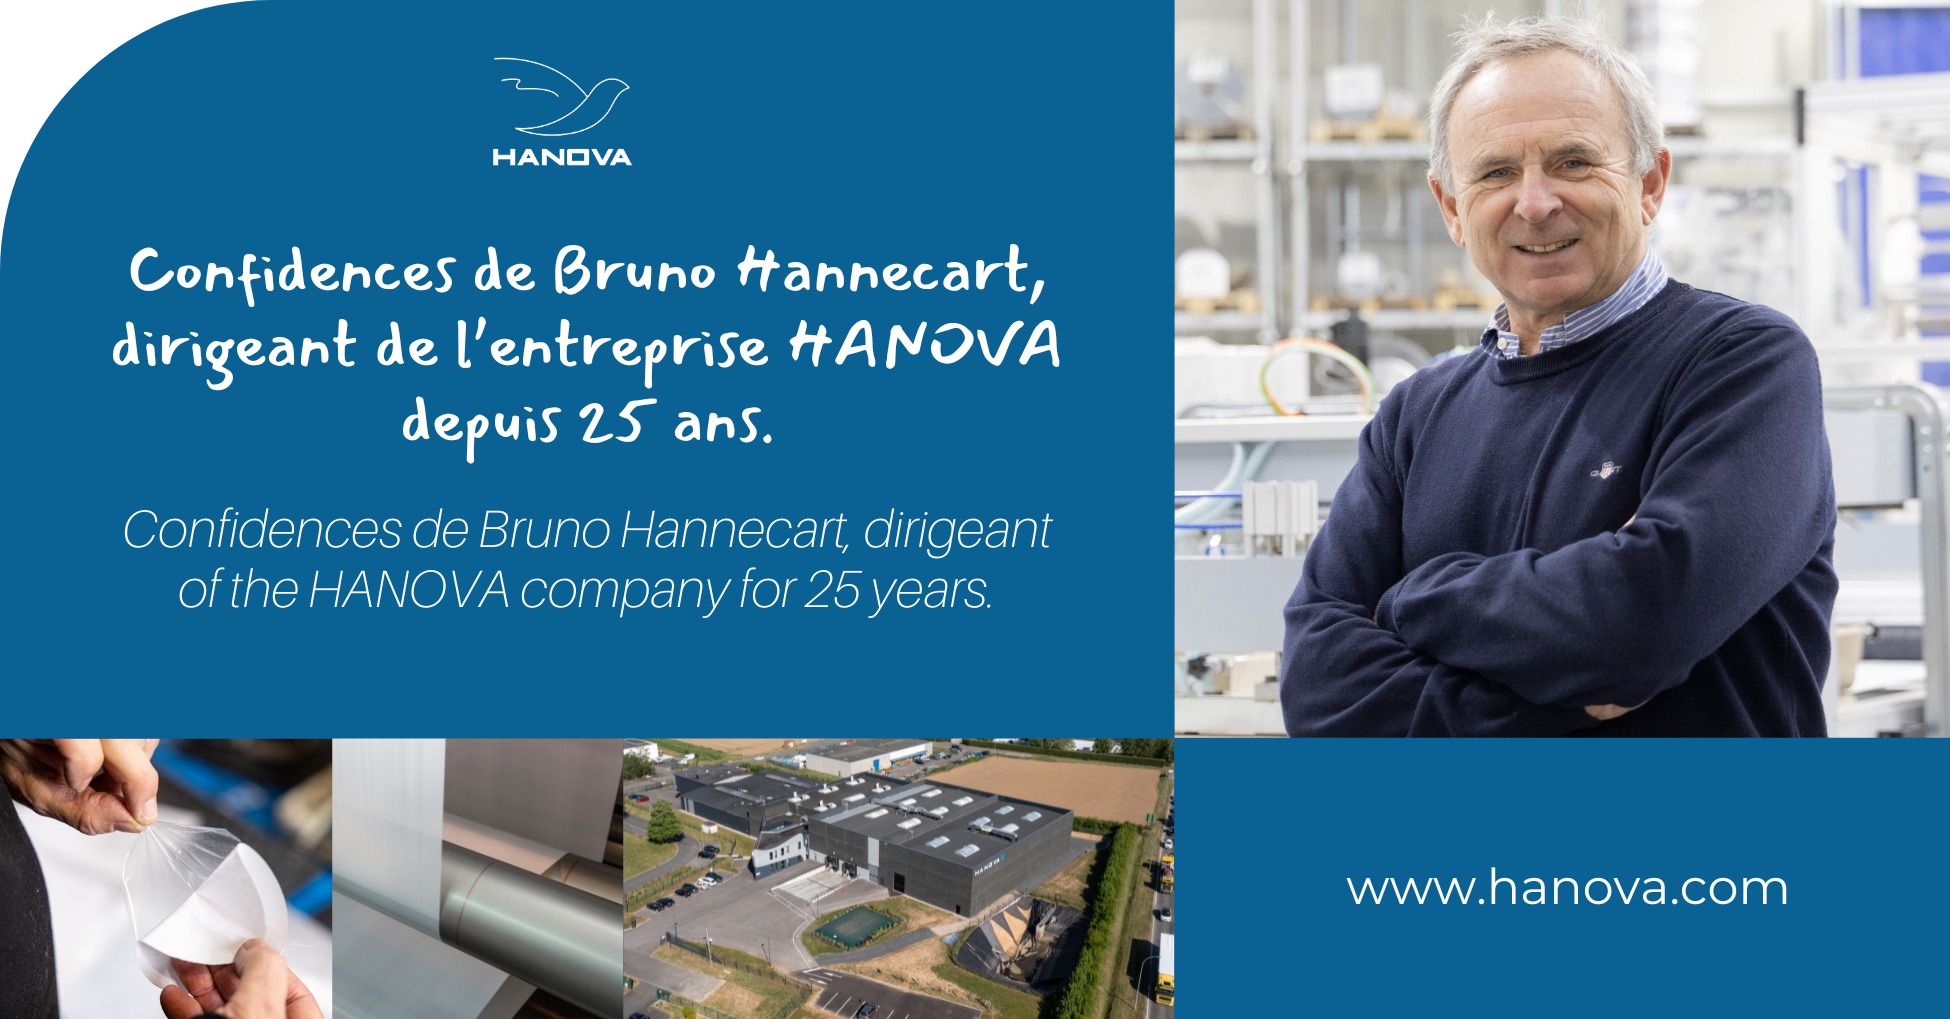 Confidences de Bruno Hannecart, dirigeant de l’entreprise HANOVA depuis 25 ans. avec la photo à droite